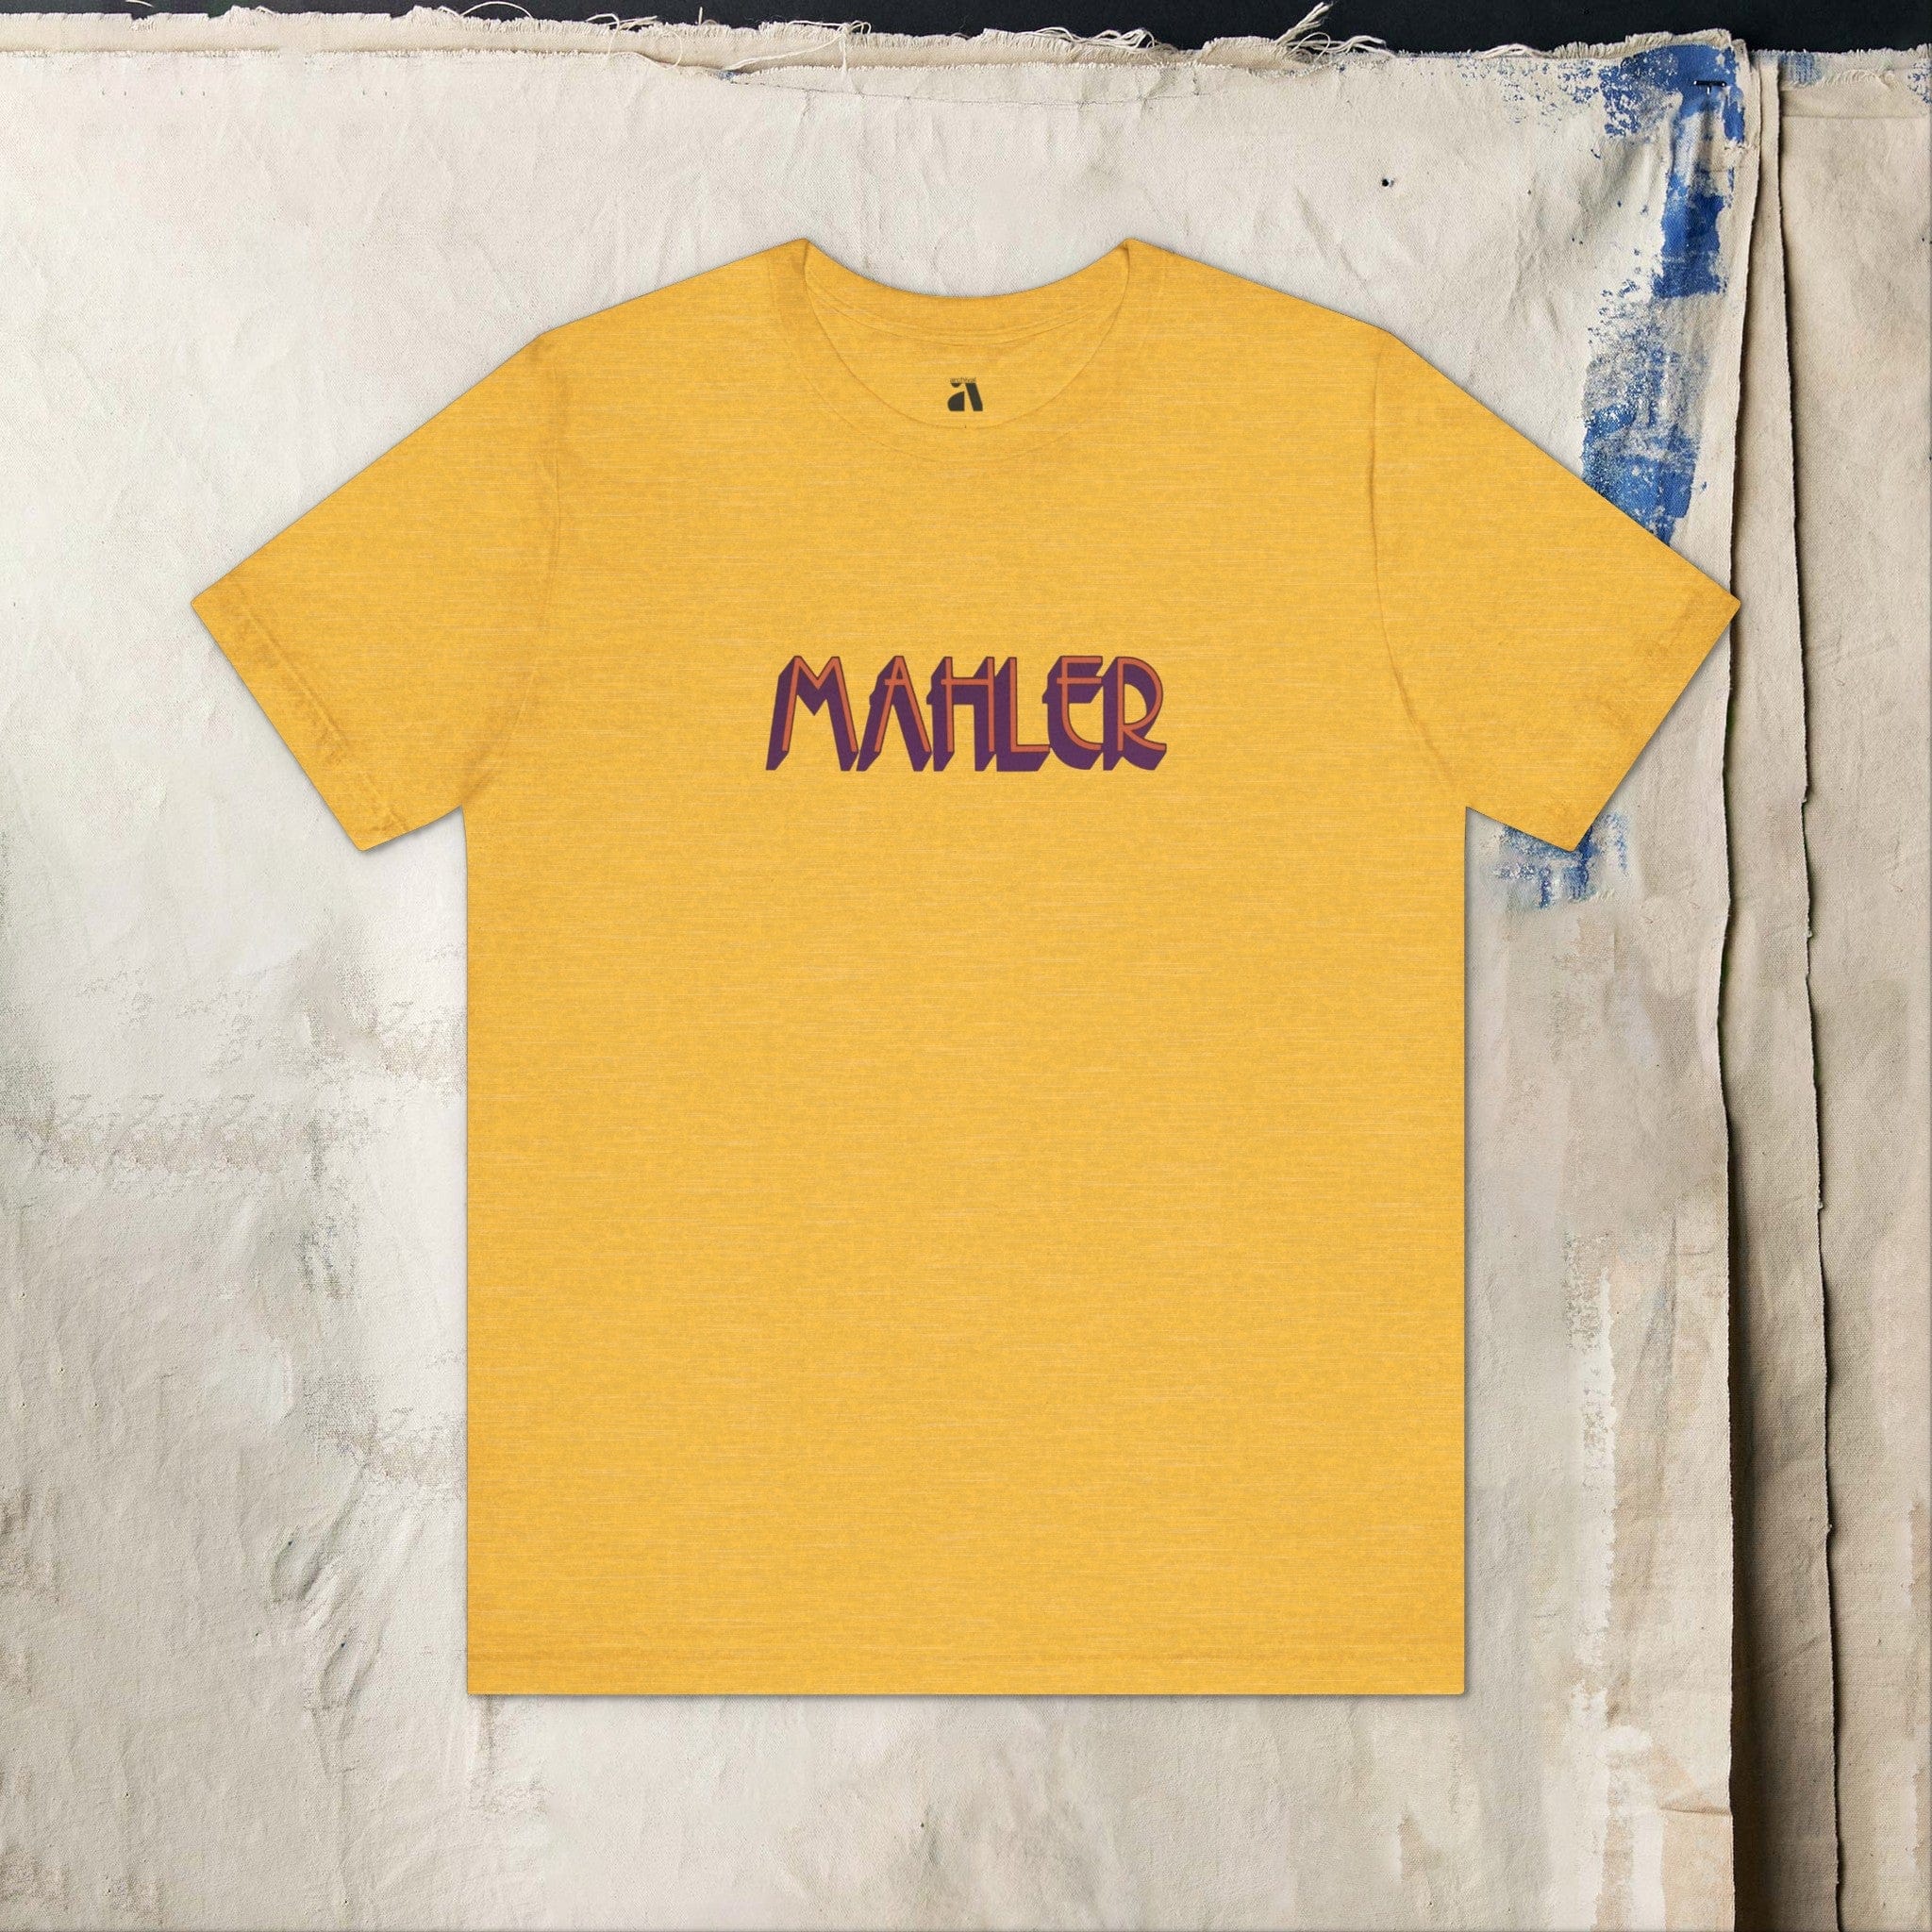 Mahler: Wordmark T-Shirt